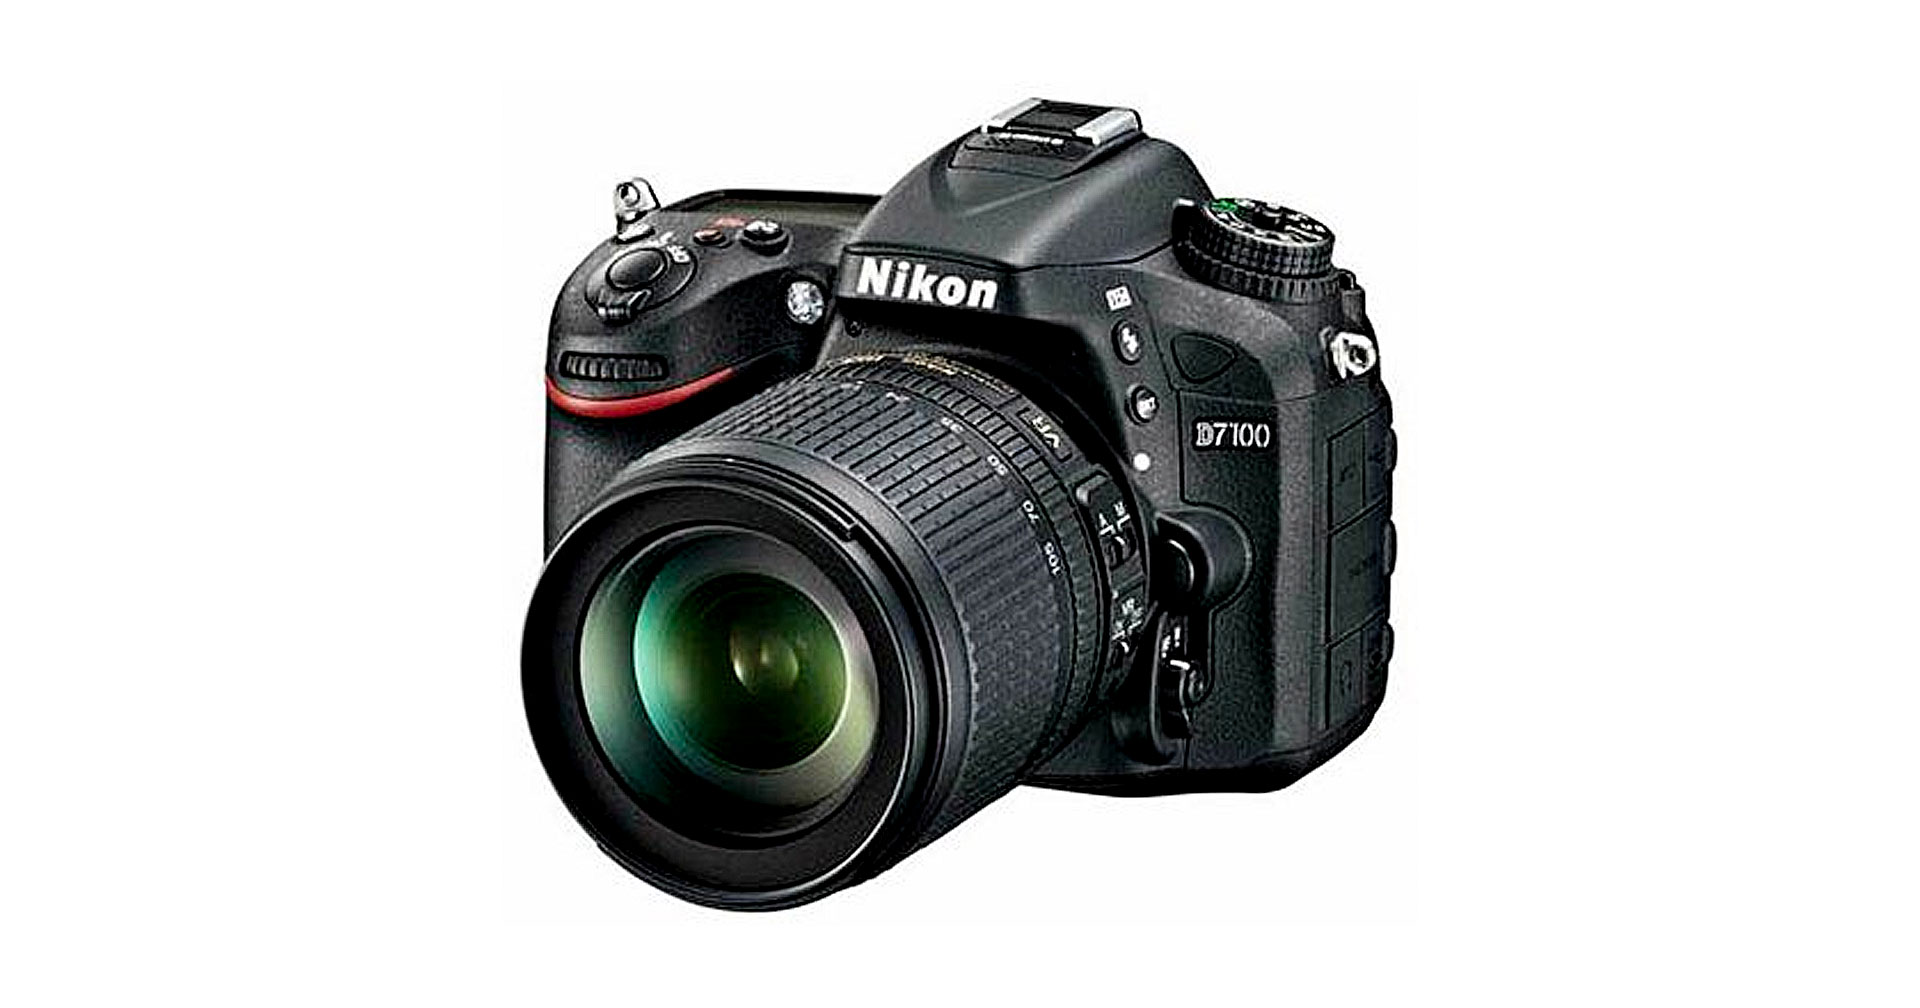 ถึงเก่าก็ยังไม่ทิ้ง Nikon ออกเฟิร์มแวร์ใหม่ให้กล้อง DSLR ‘D7100’ ที่วางขายมานานเกือบ 10 ปี!